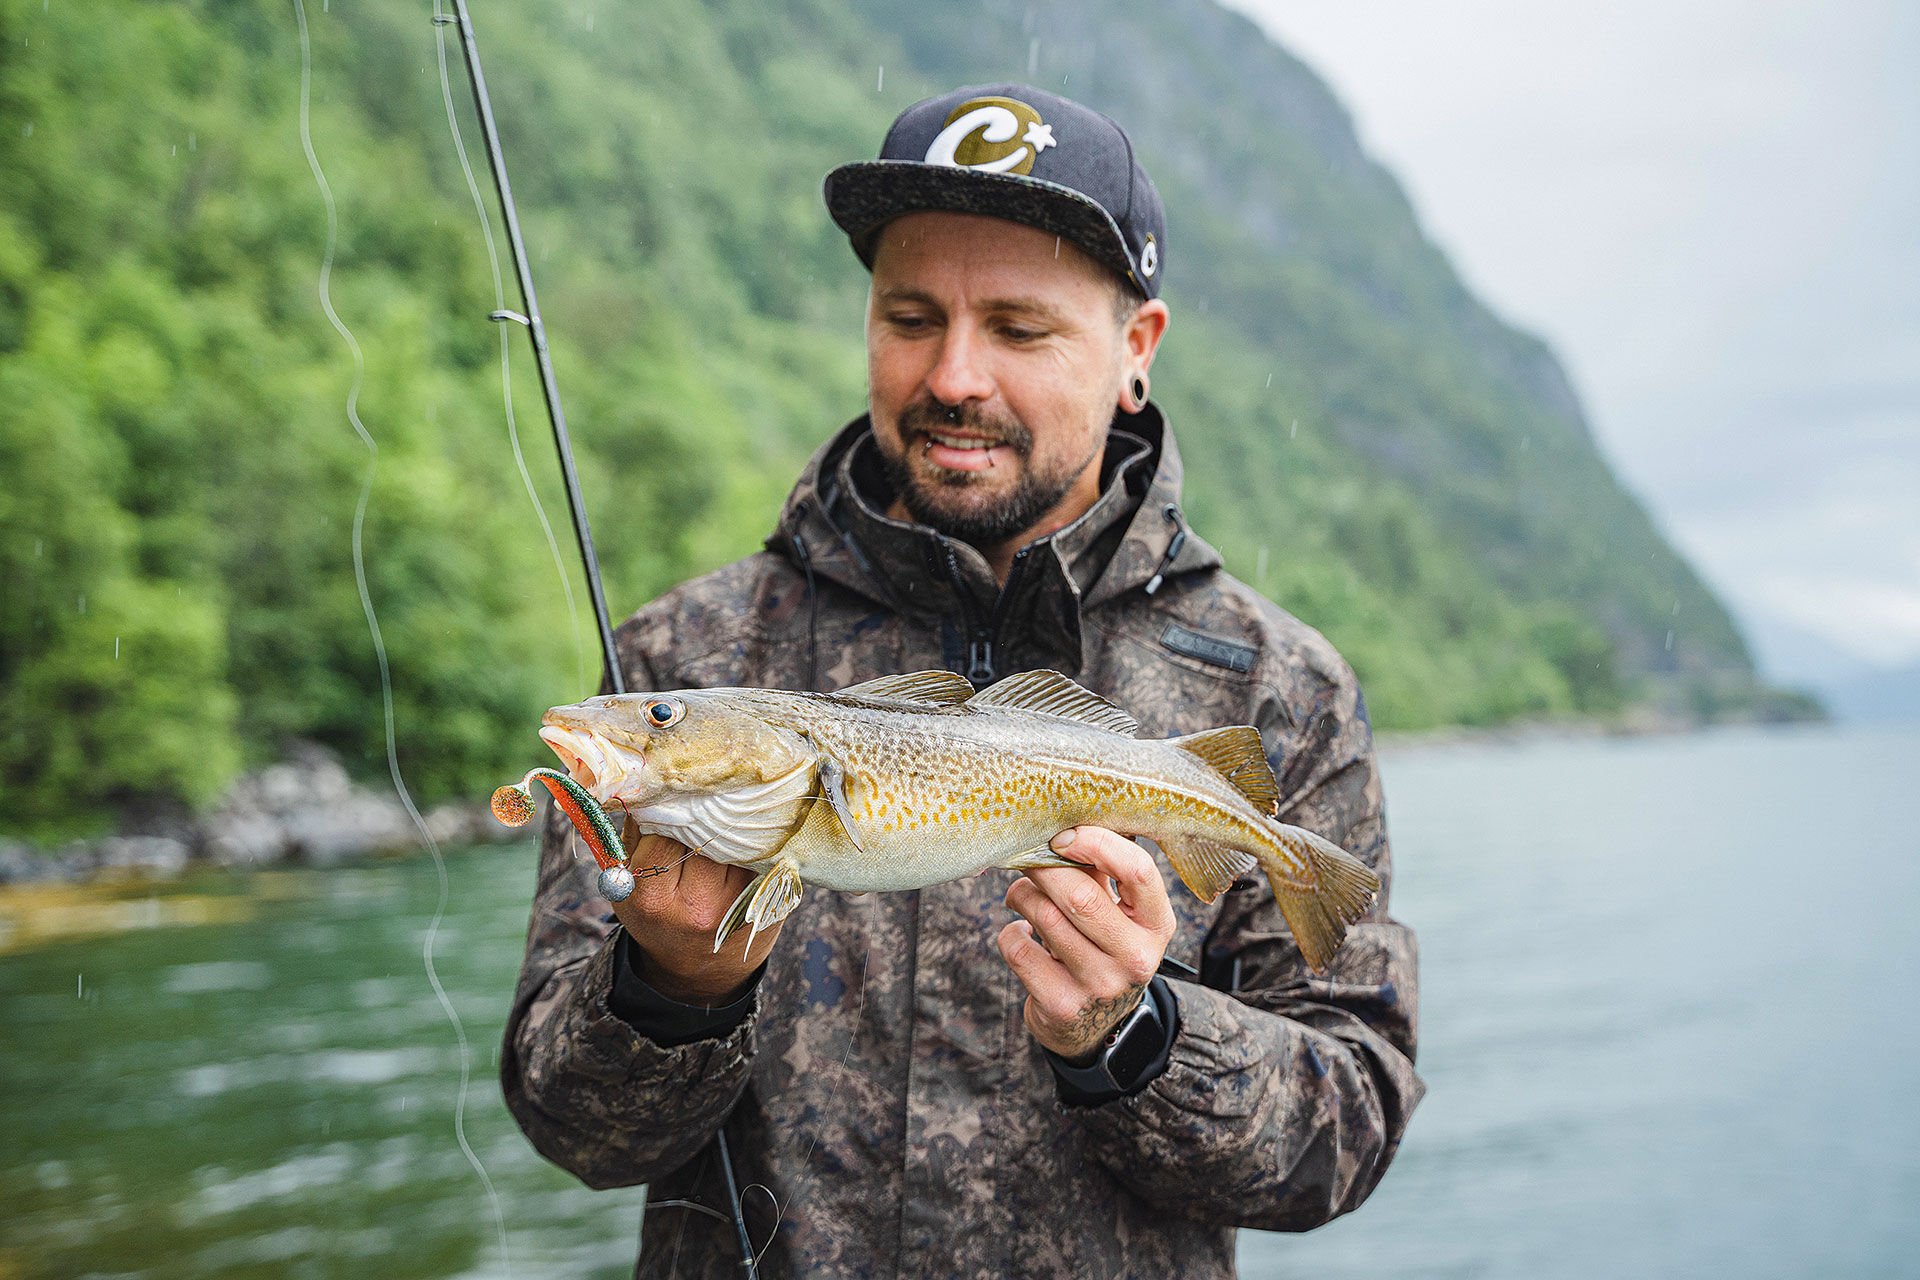  Bennos erster Norwegen-Fisch  war ein kleiner Dorsch in perfekter Küchengrösse – und der Startschuss für eine erfolgreiche 14-Tage-Tour.  